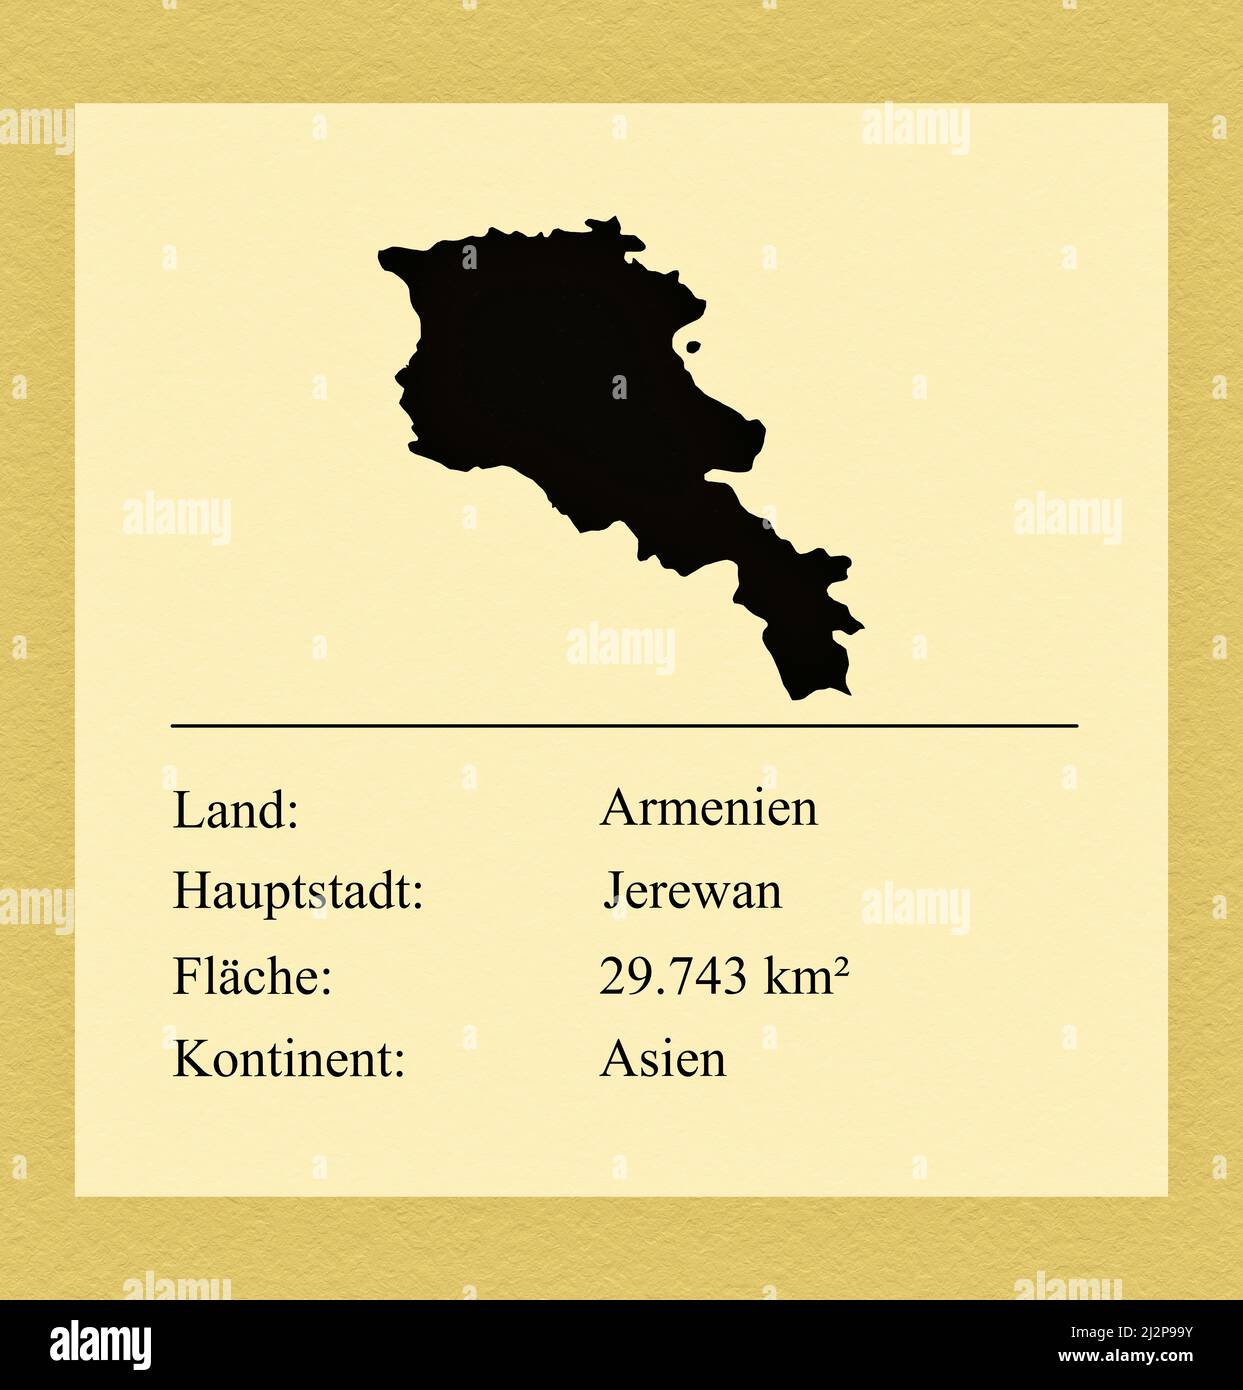 Umrisse des Landes Armenien, darunter ein kleiner Steckbrief mit Ländernamen, Hauptstadt, Fläche und Kontinent Stock Photo